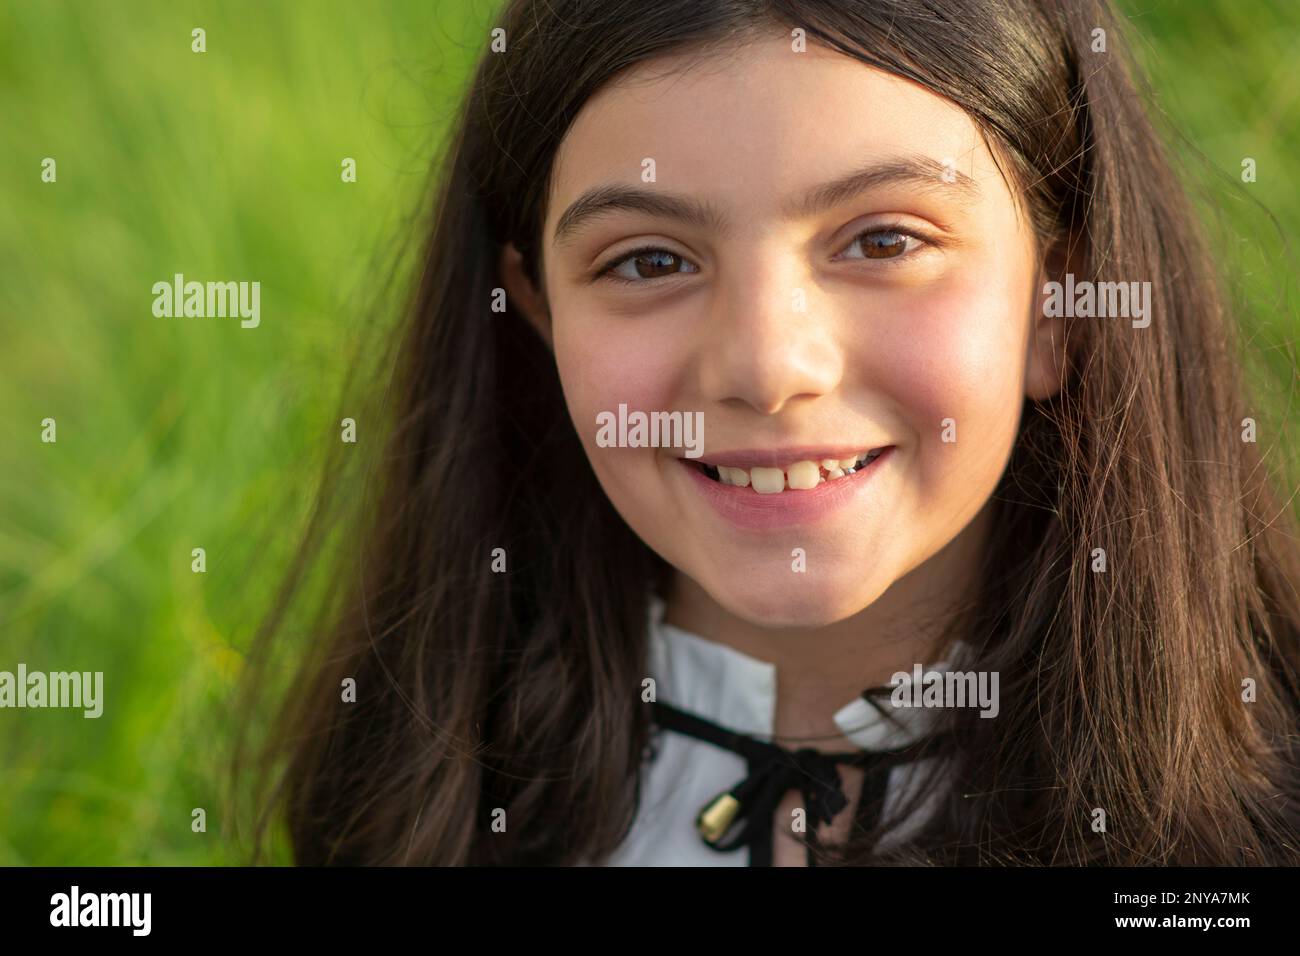 Ragazza piccola felice sorridente all'aperto guardando la macchina fotografica Foto Stock